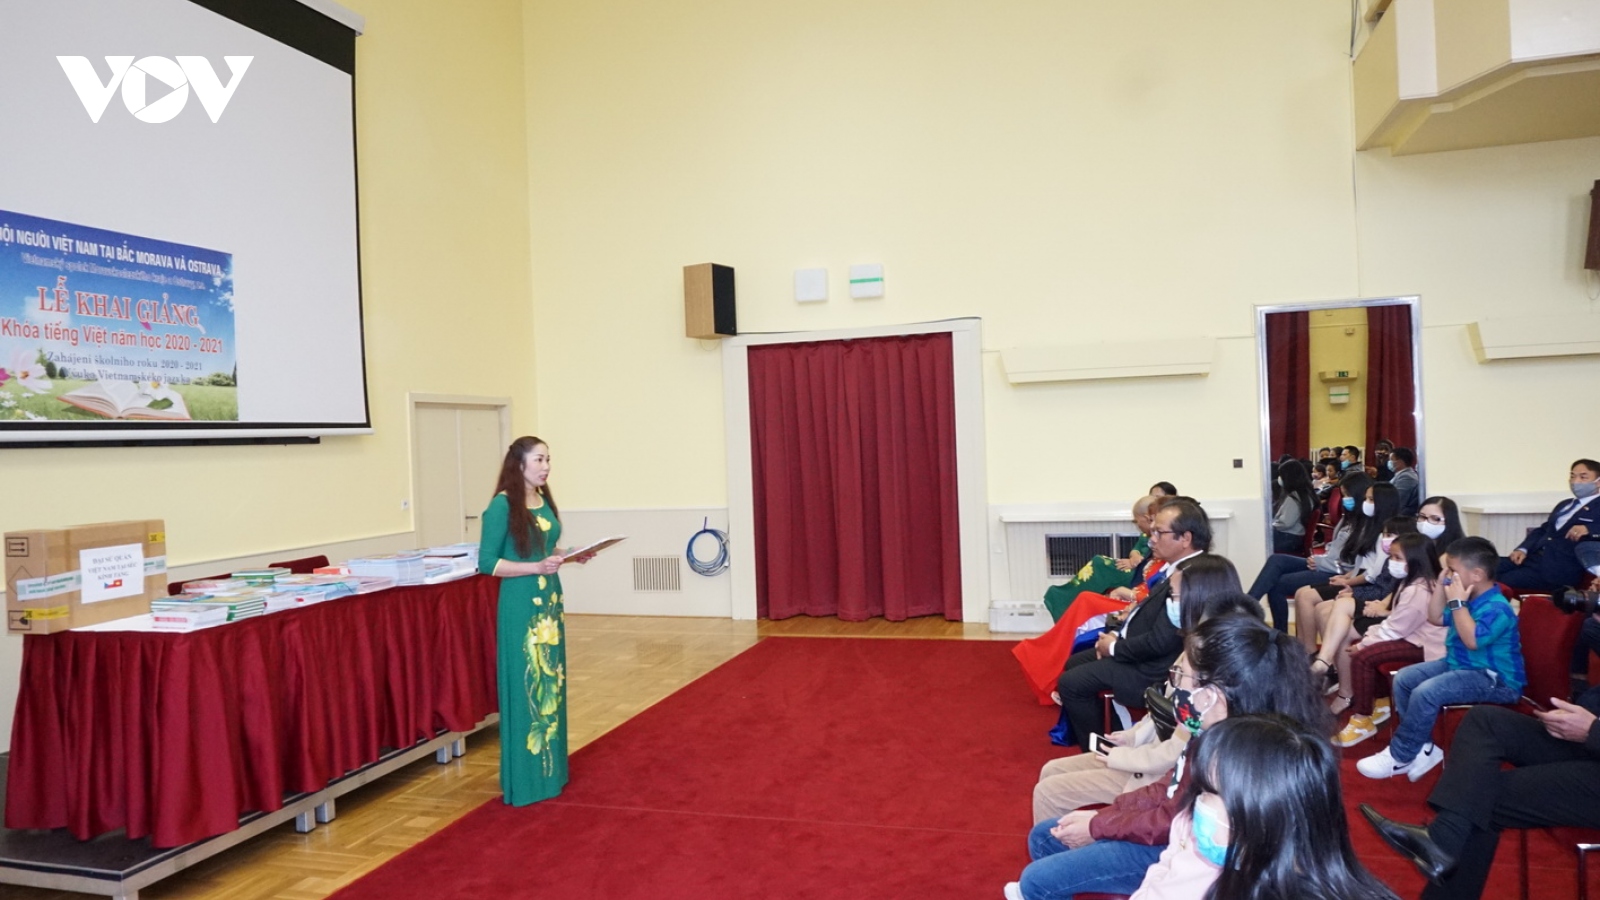 Khai giảng lớp học tiếng Việt tại Ostrava, Cộng hòa Séc